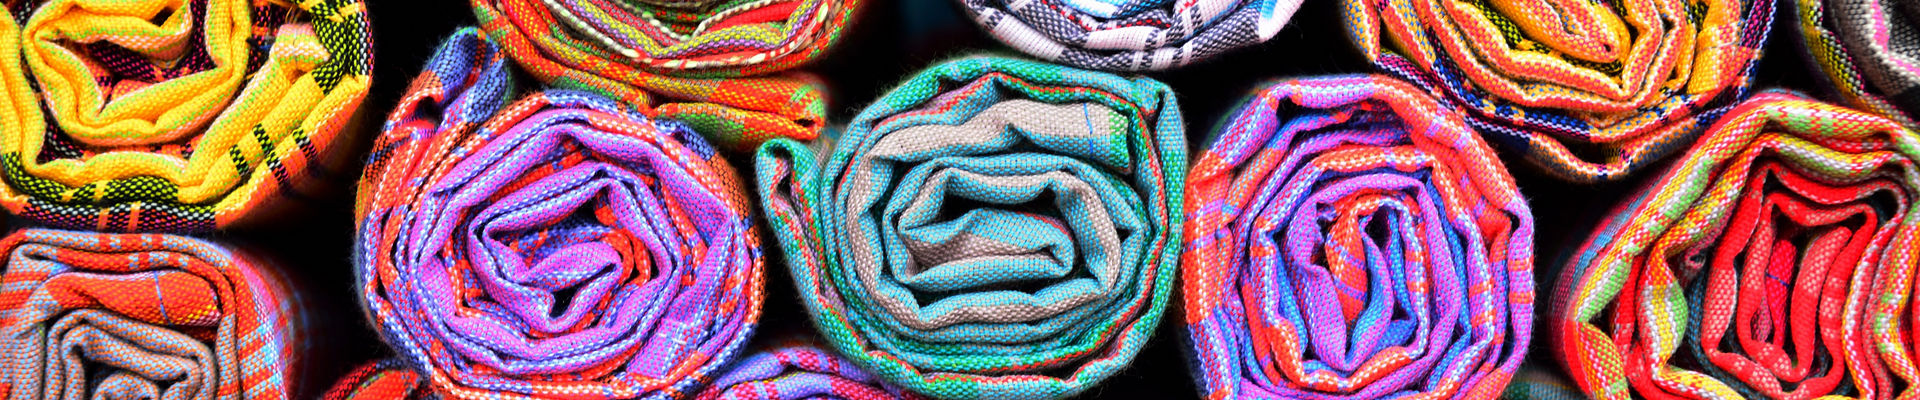 有机硅解决方案为可持续纺织品生产提供色彩鲜亮的织物